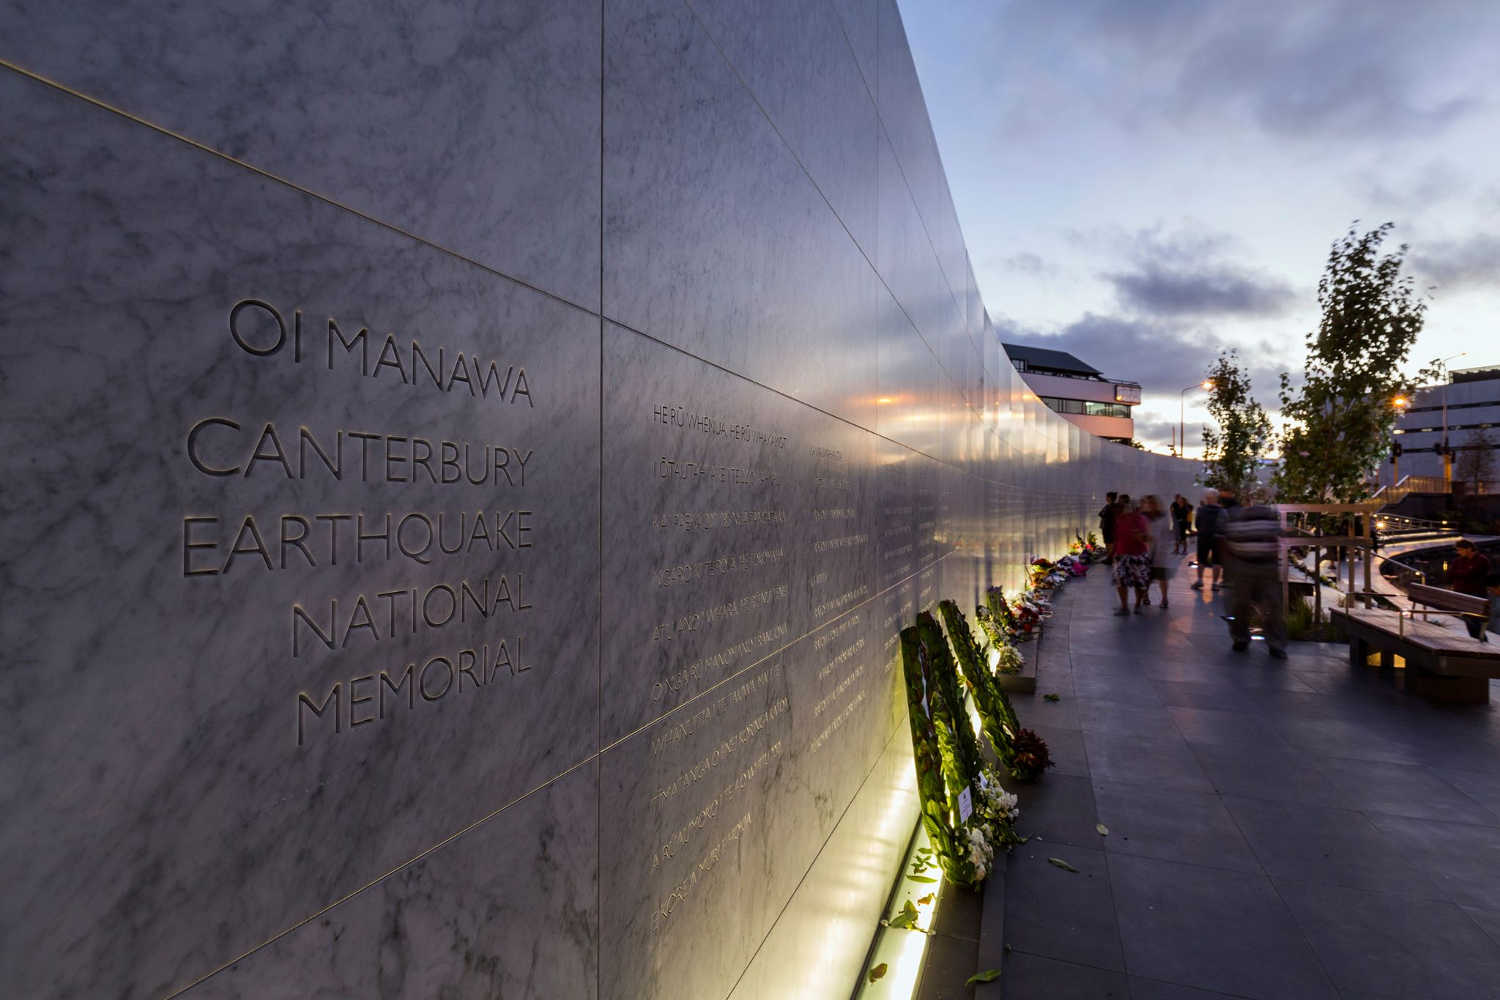 Oi Manawa @Canterbury Earthquake National Memorial